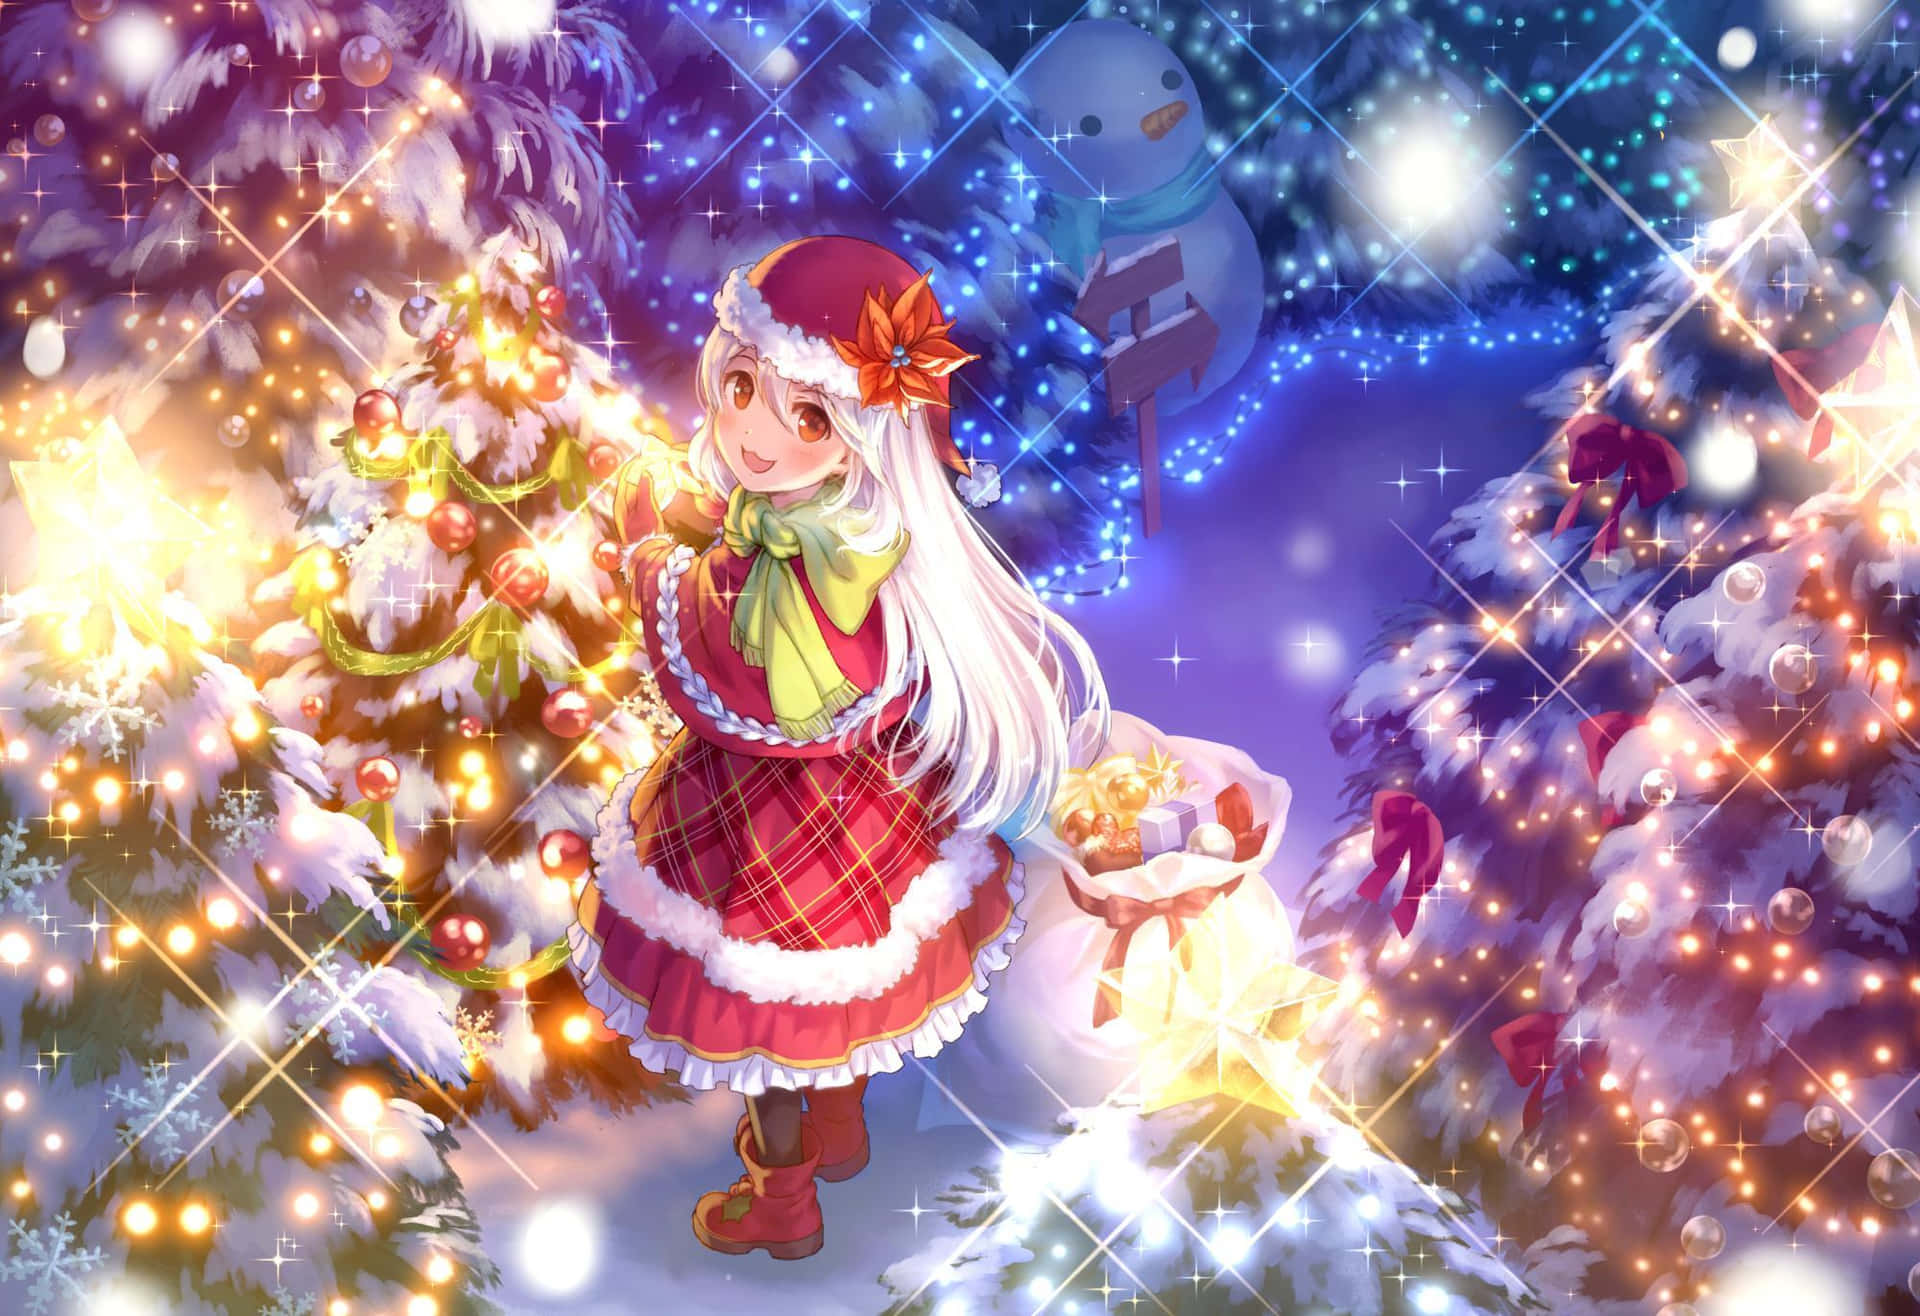 Juligcartoonbild På En Anime-tjej Som Santa.